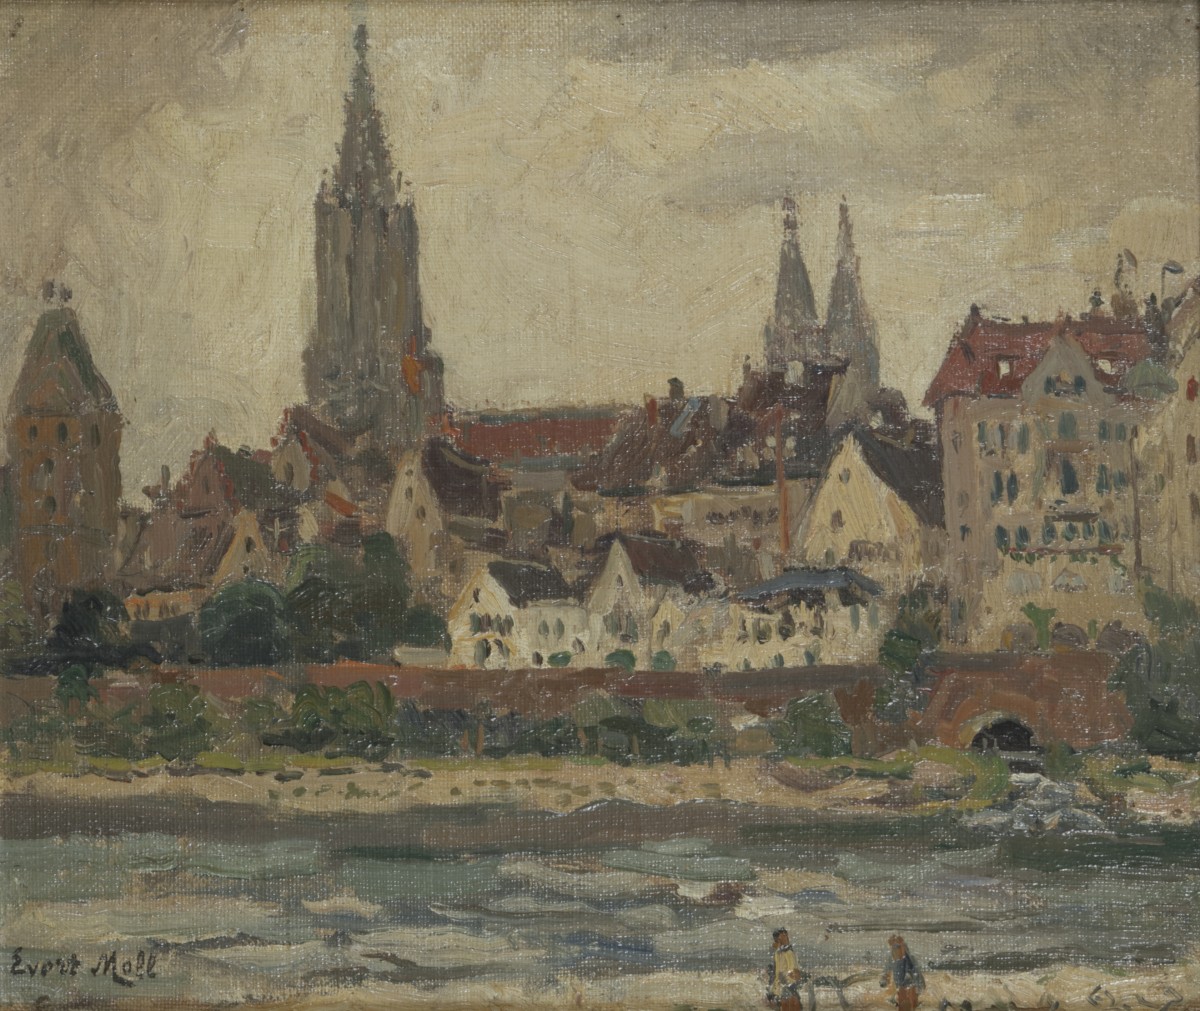 Evert Moll (Voorburg 1878 - 1955 Den Haag), Gezicht op een stad.